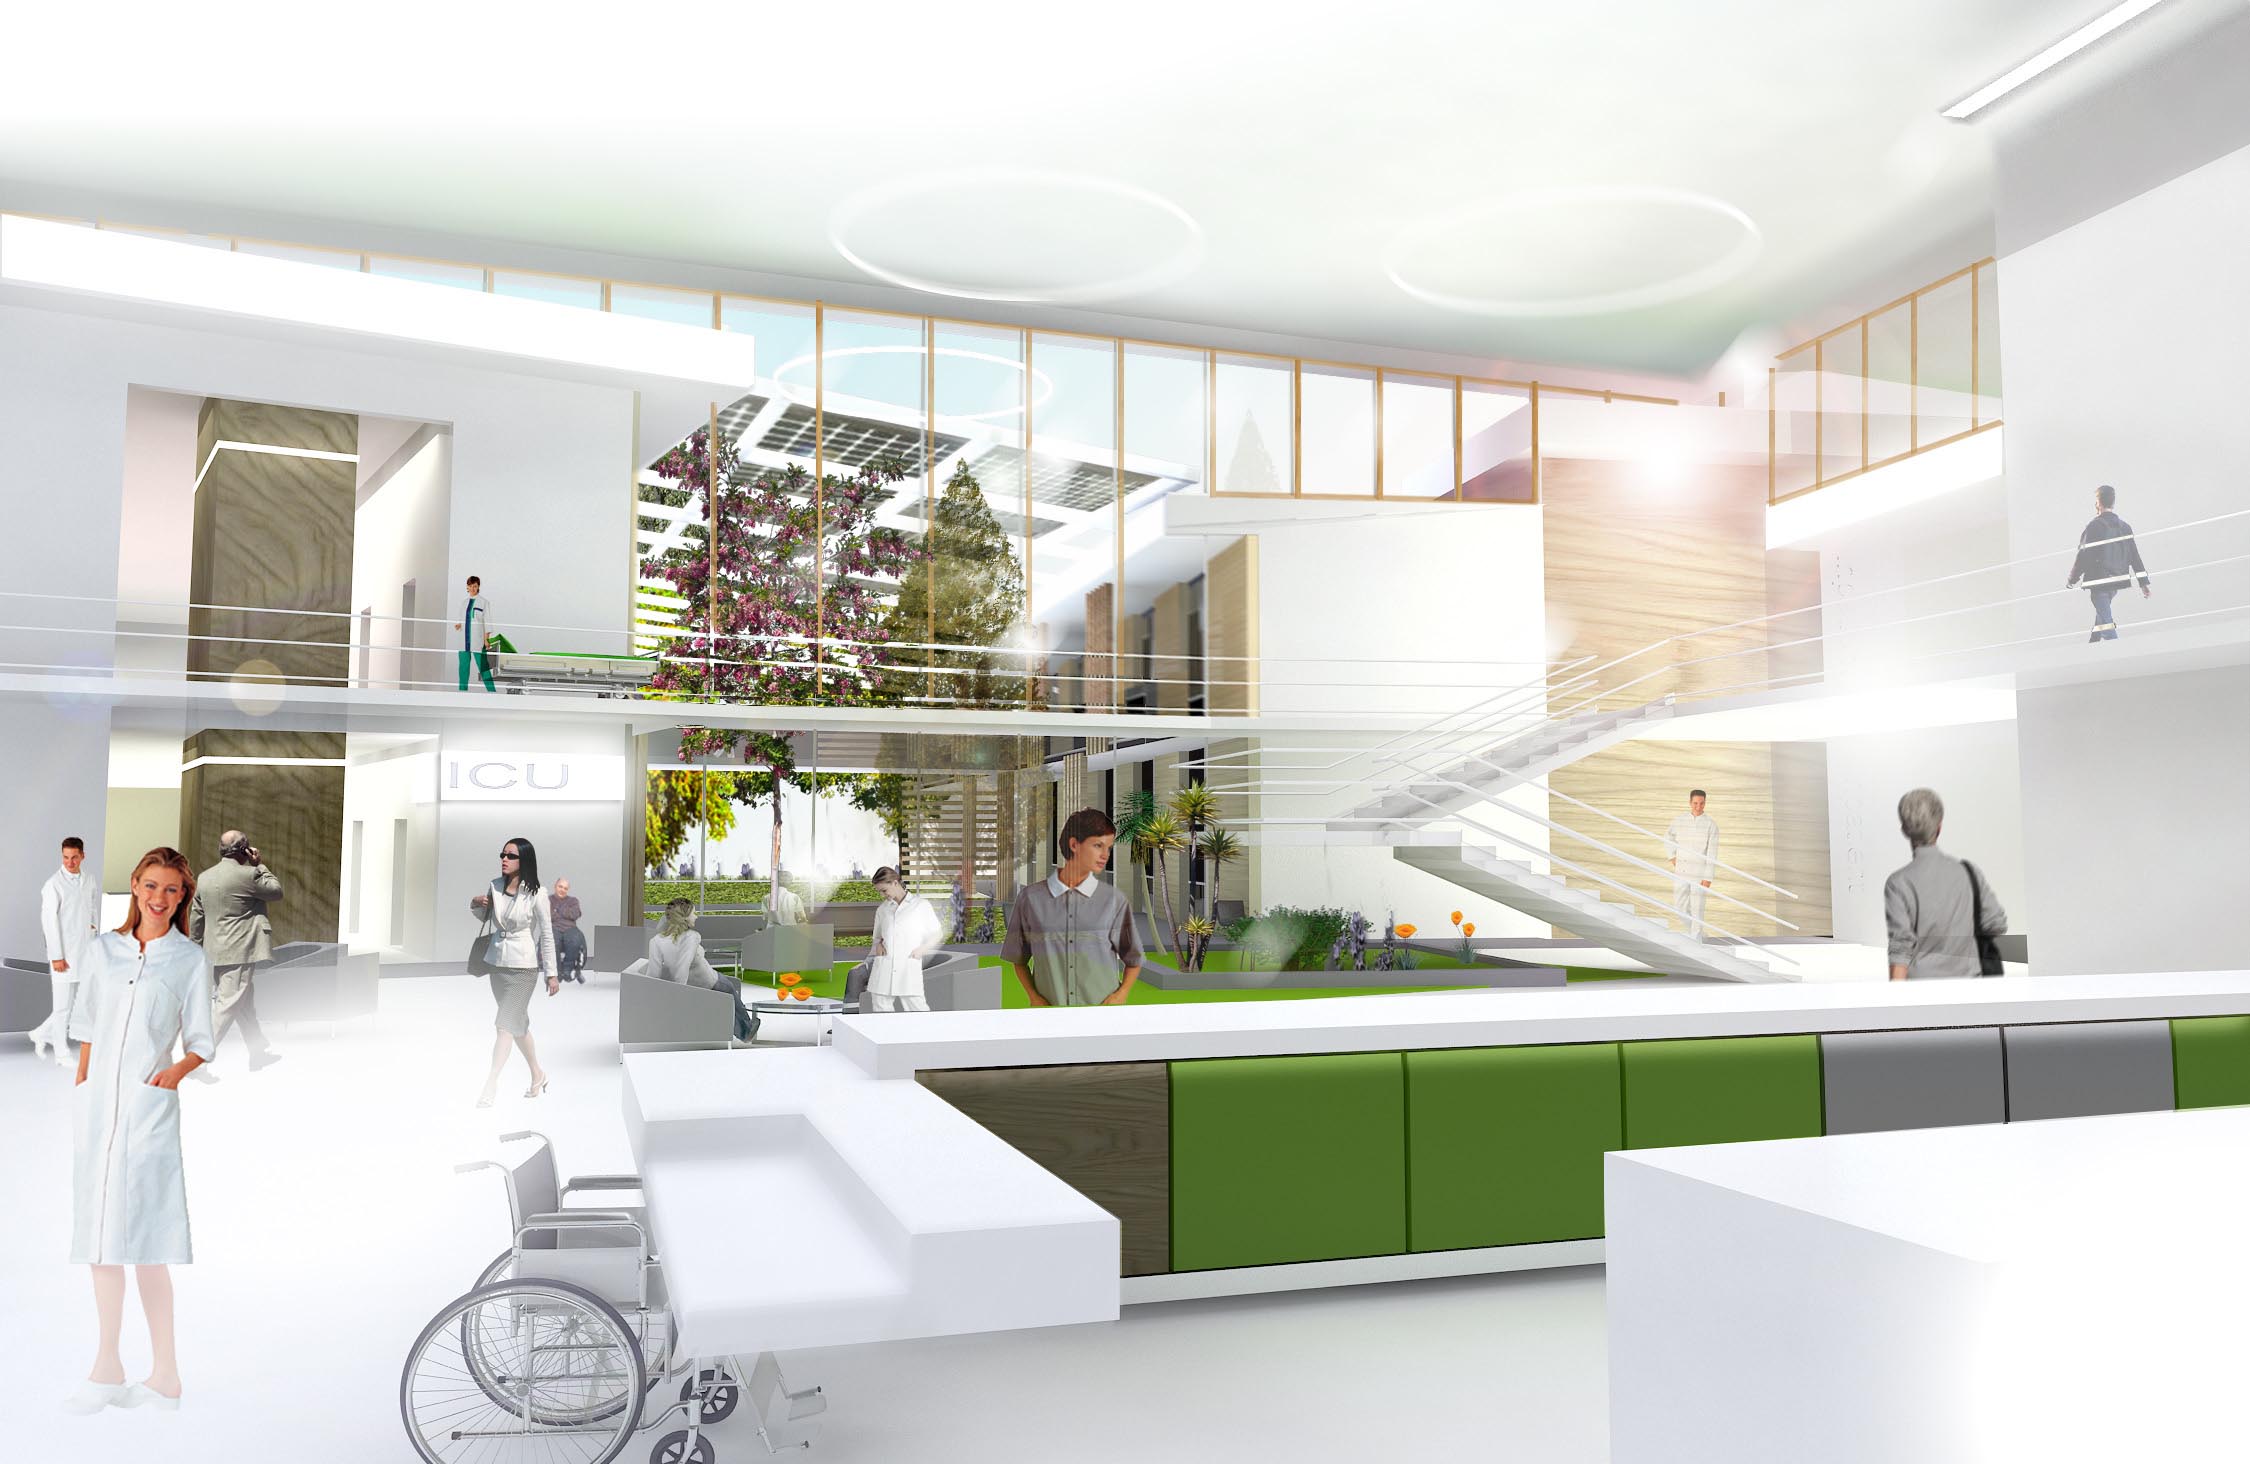 สร้างสุขภาวะโรงพยาบาลด้วยการออกแบบ  thaihealth